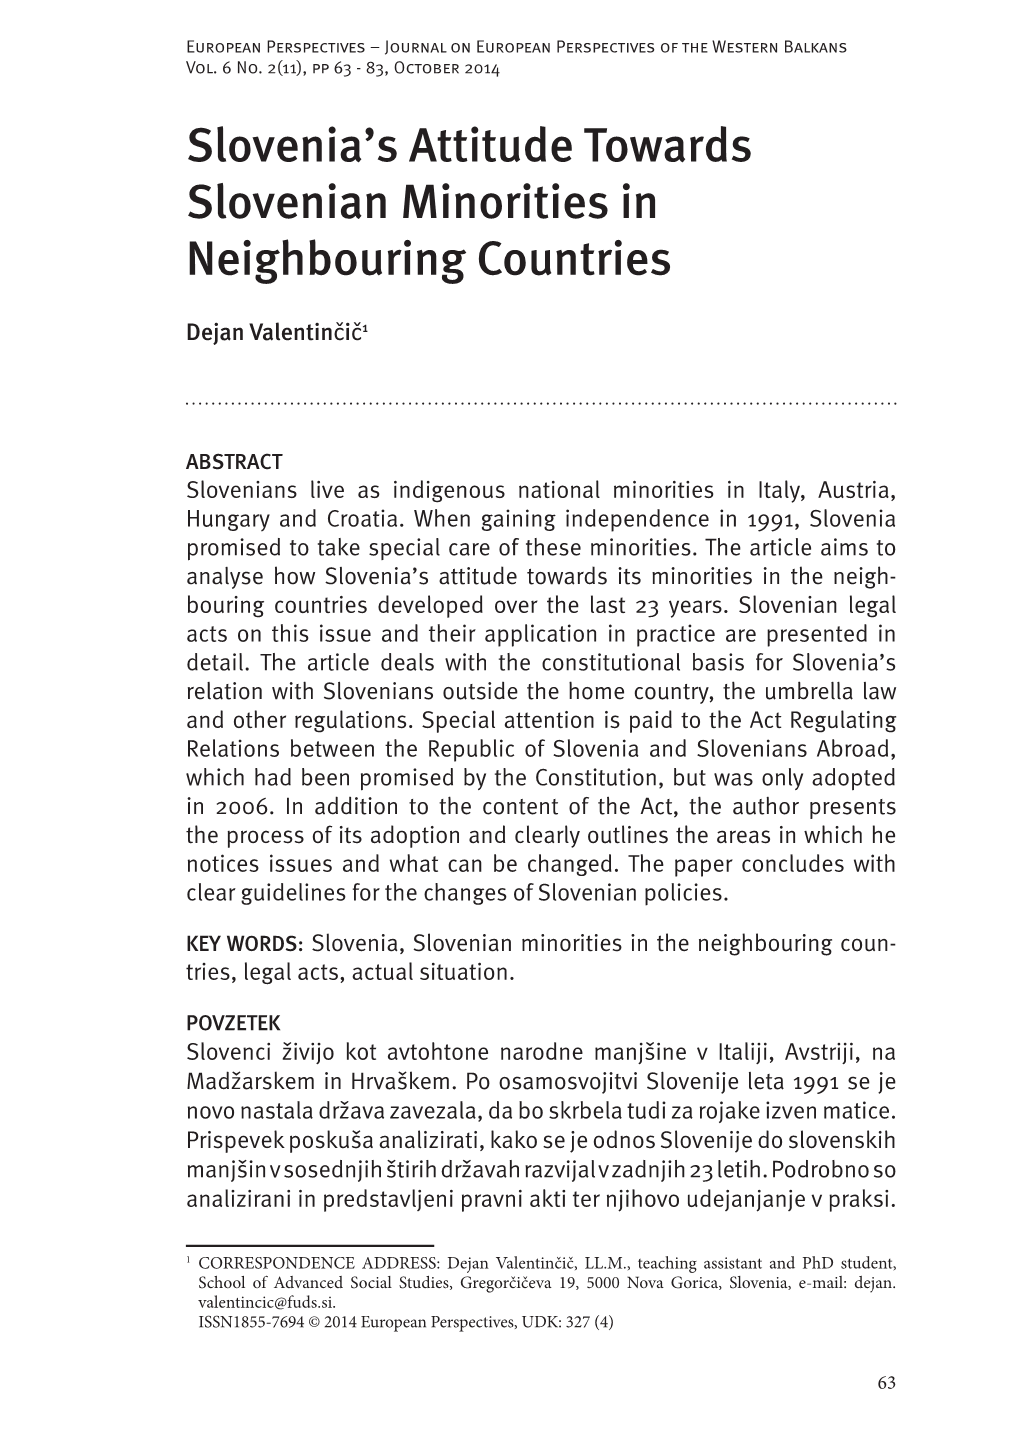 Slovenia's Attitude Towards Slovenian Minorities in Neighbouring Countries